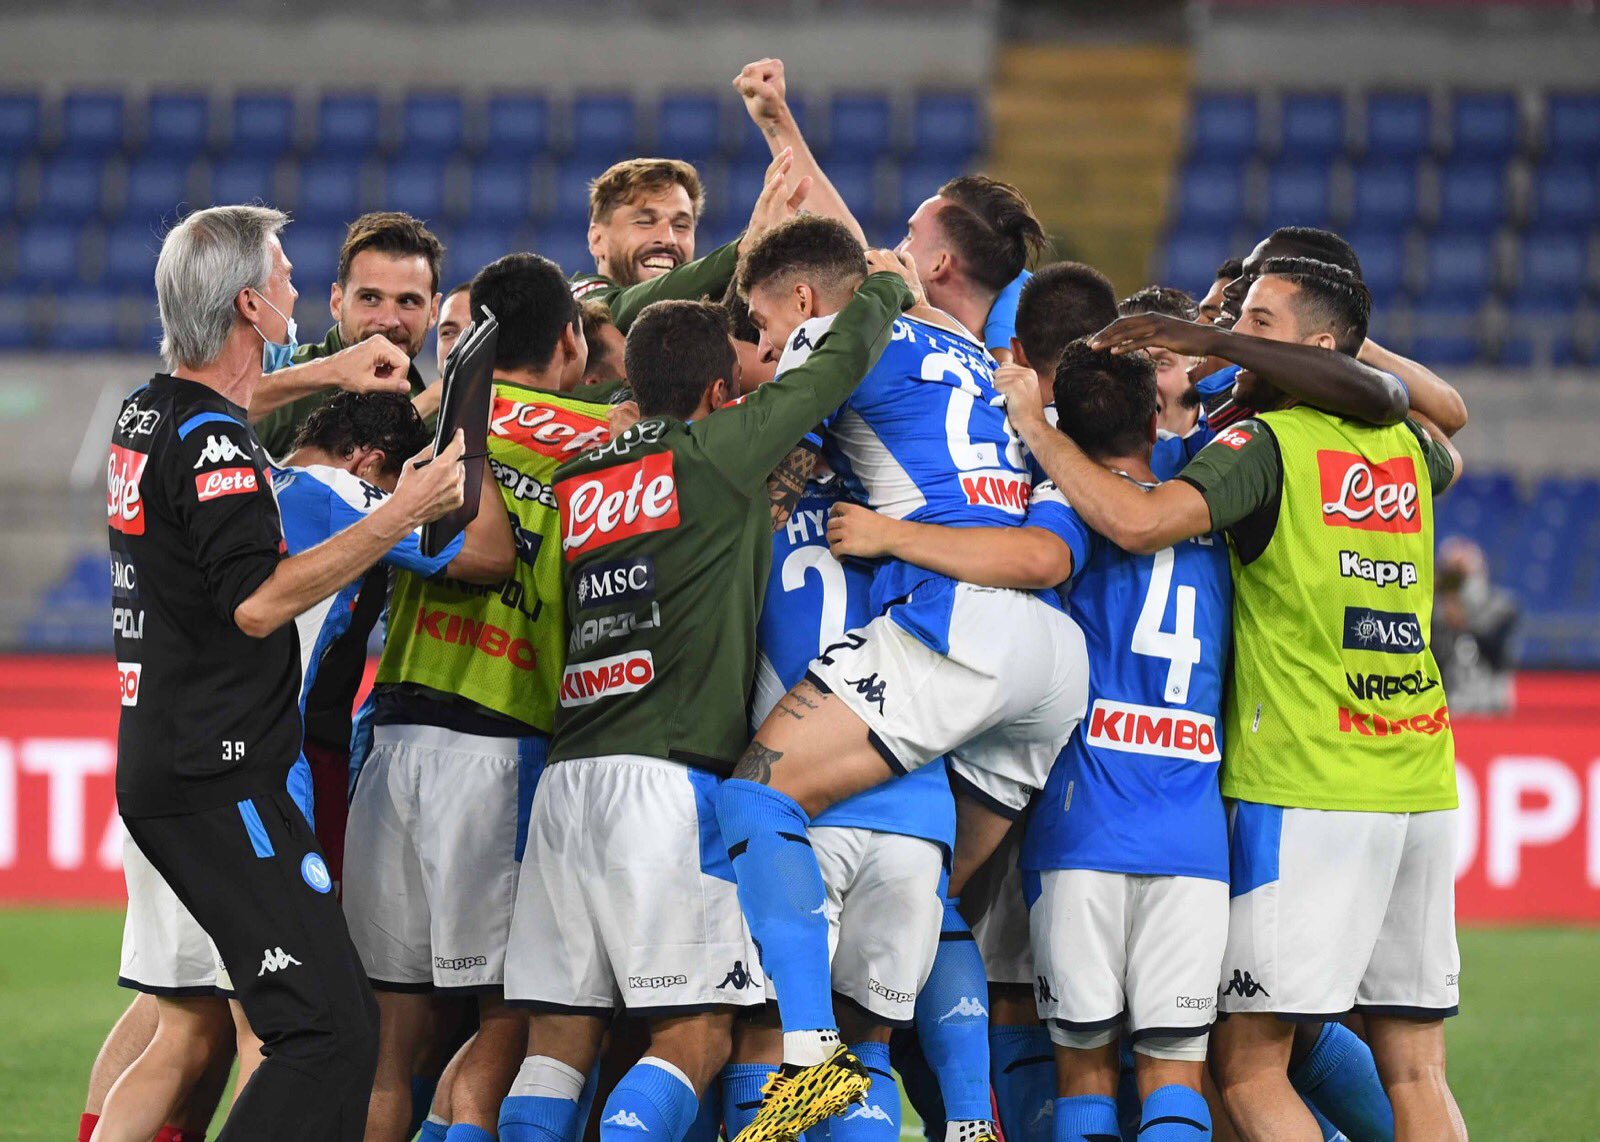 Napoli chegou ao sexto título da Coppa Italia (Créditos: Divulgação/Napoli)